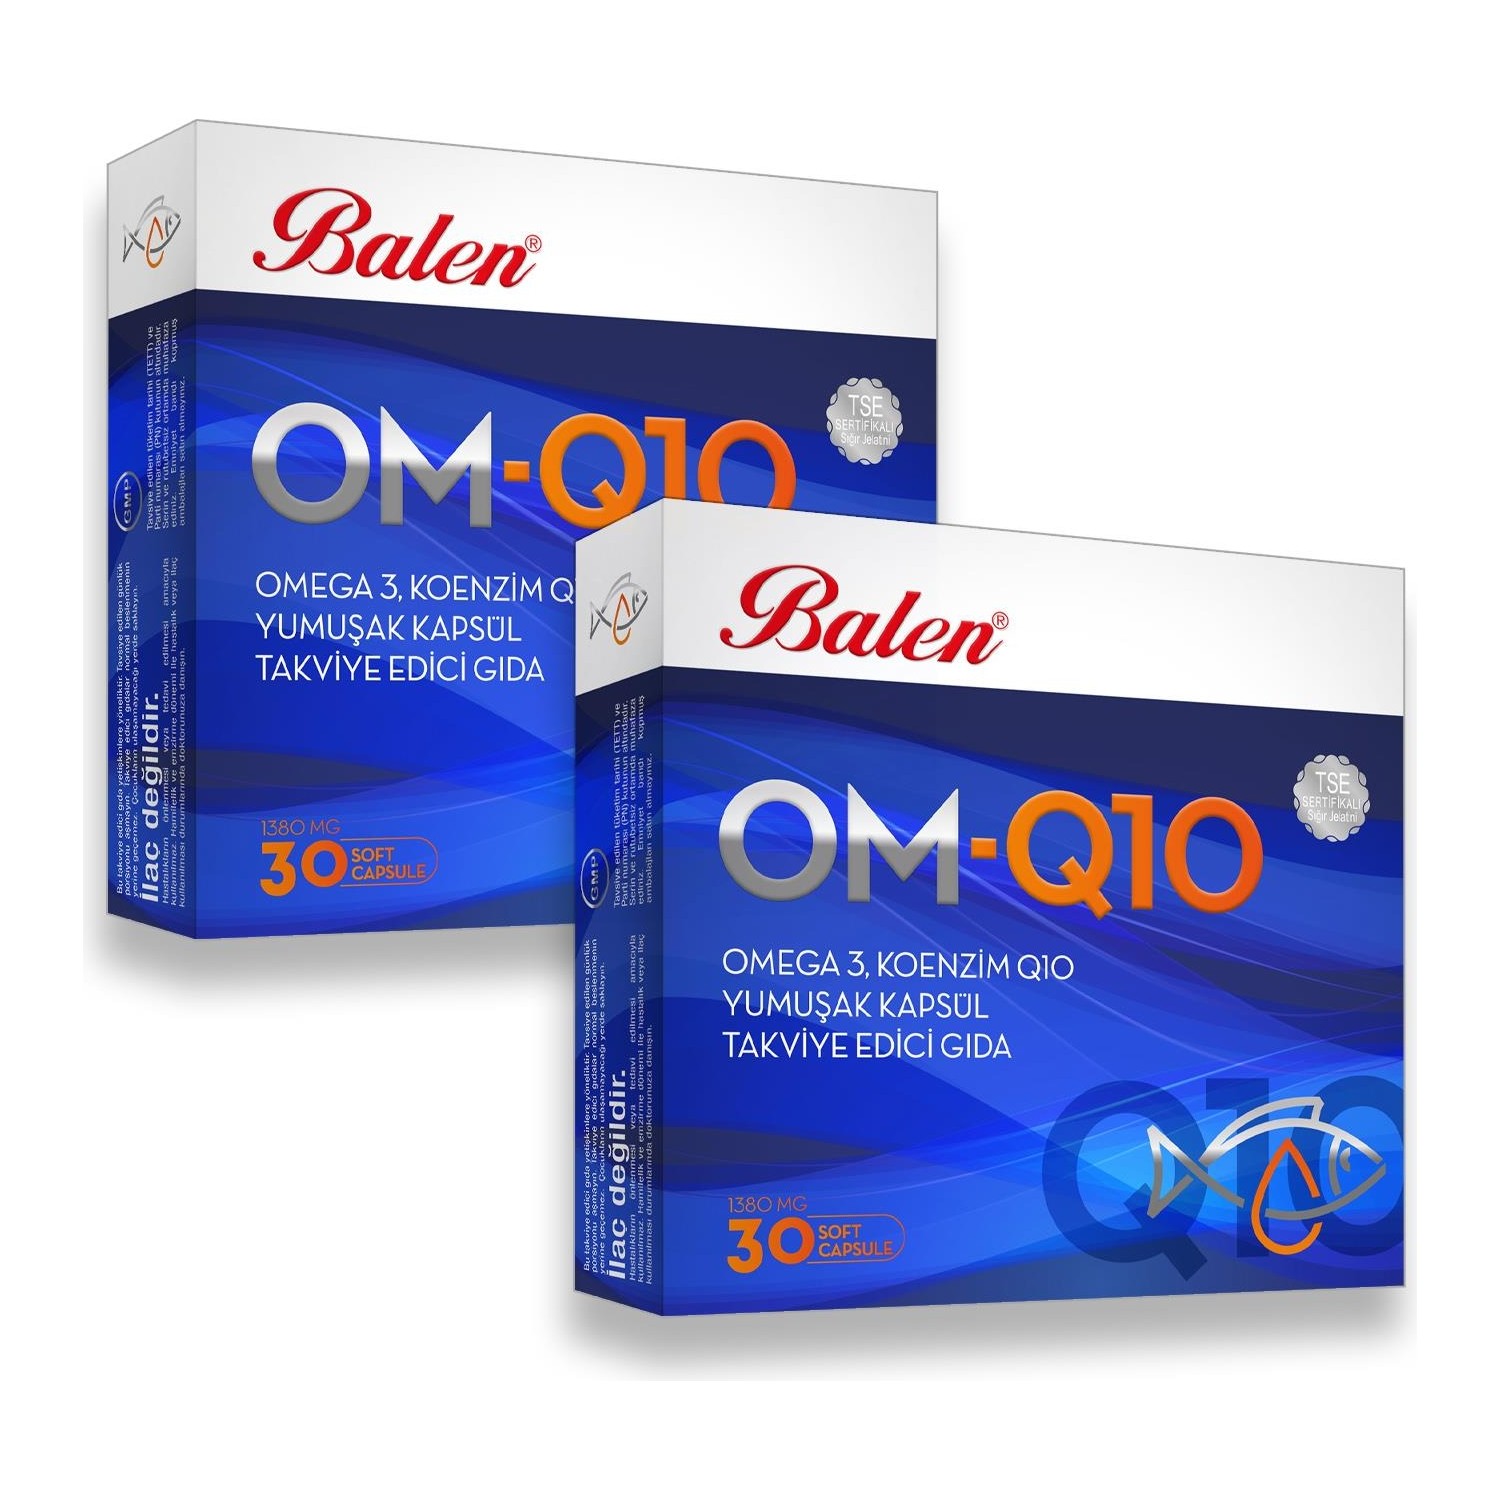 Рыбий жир Balen OM-Q10 Omega-3, 2 упаковки по 30 мягких капсул